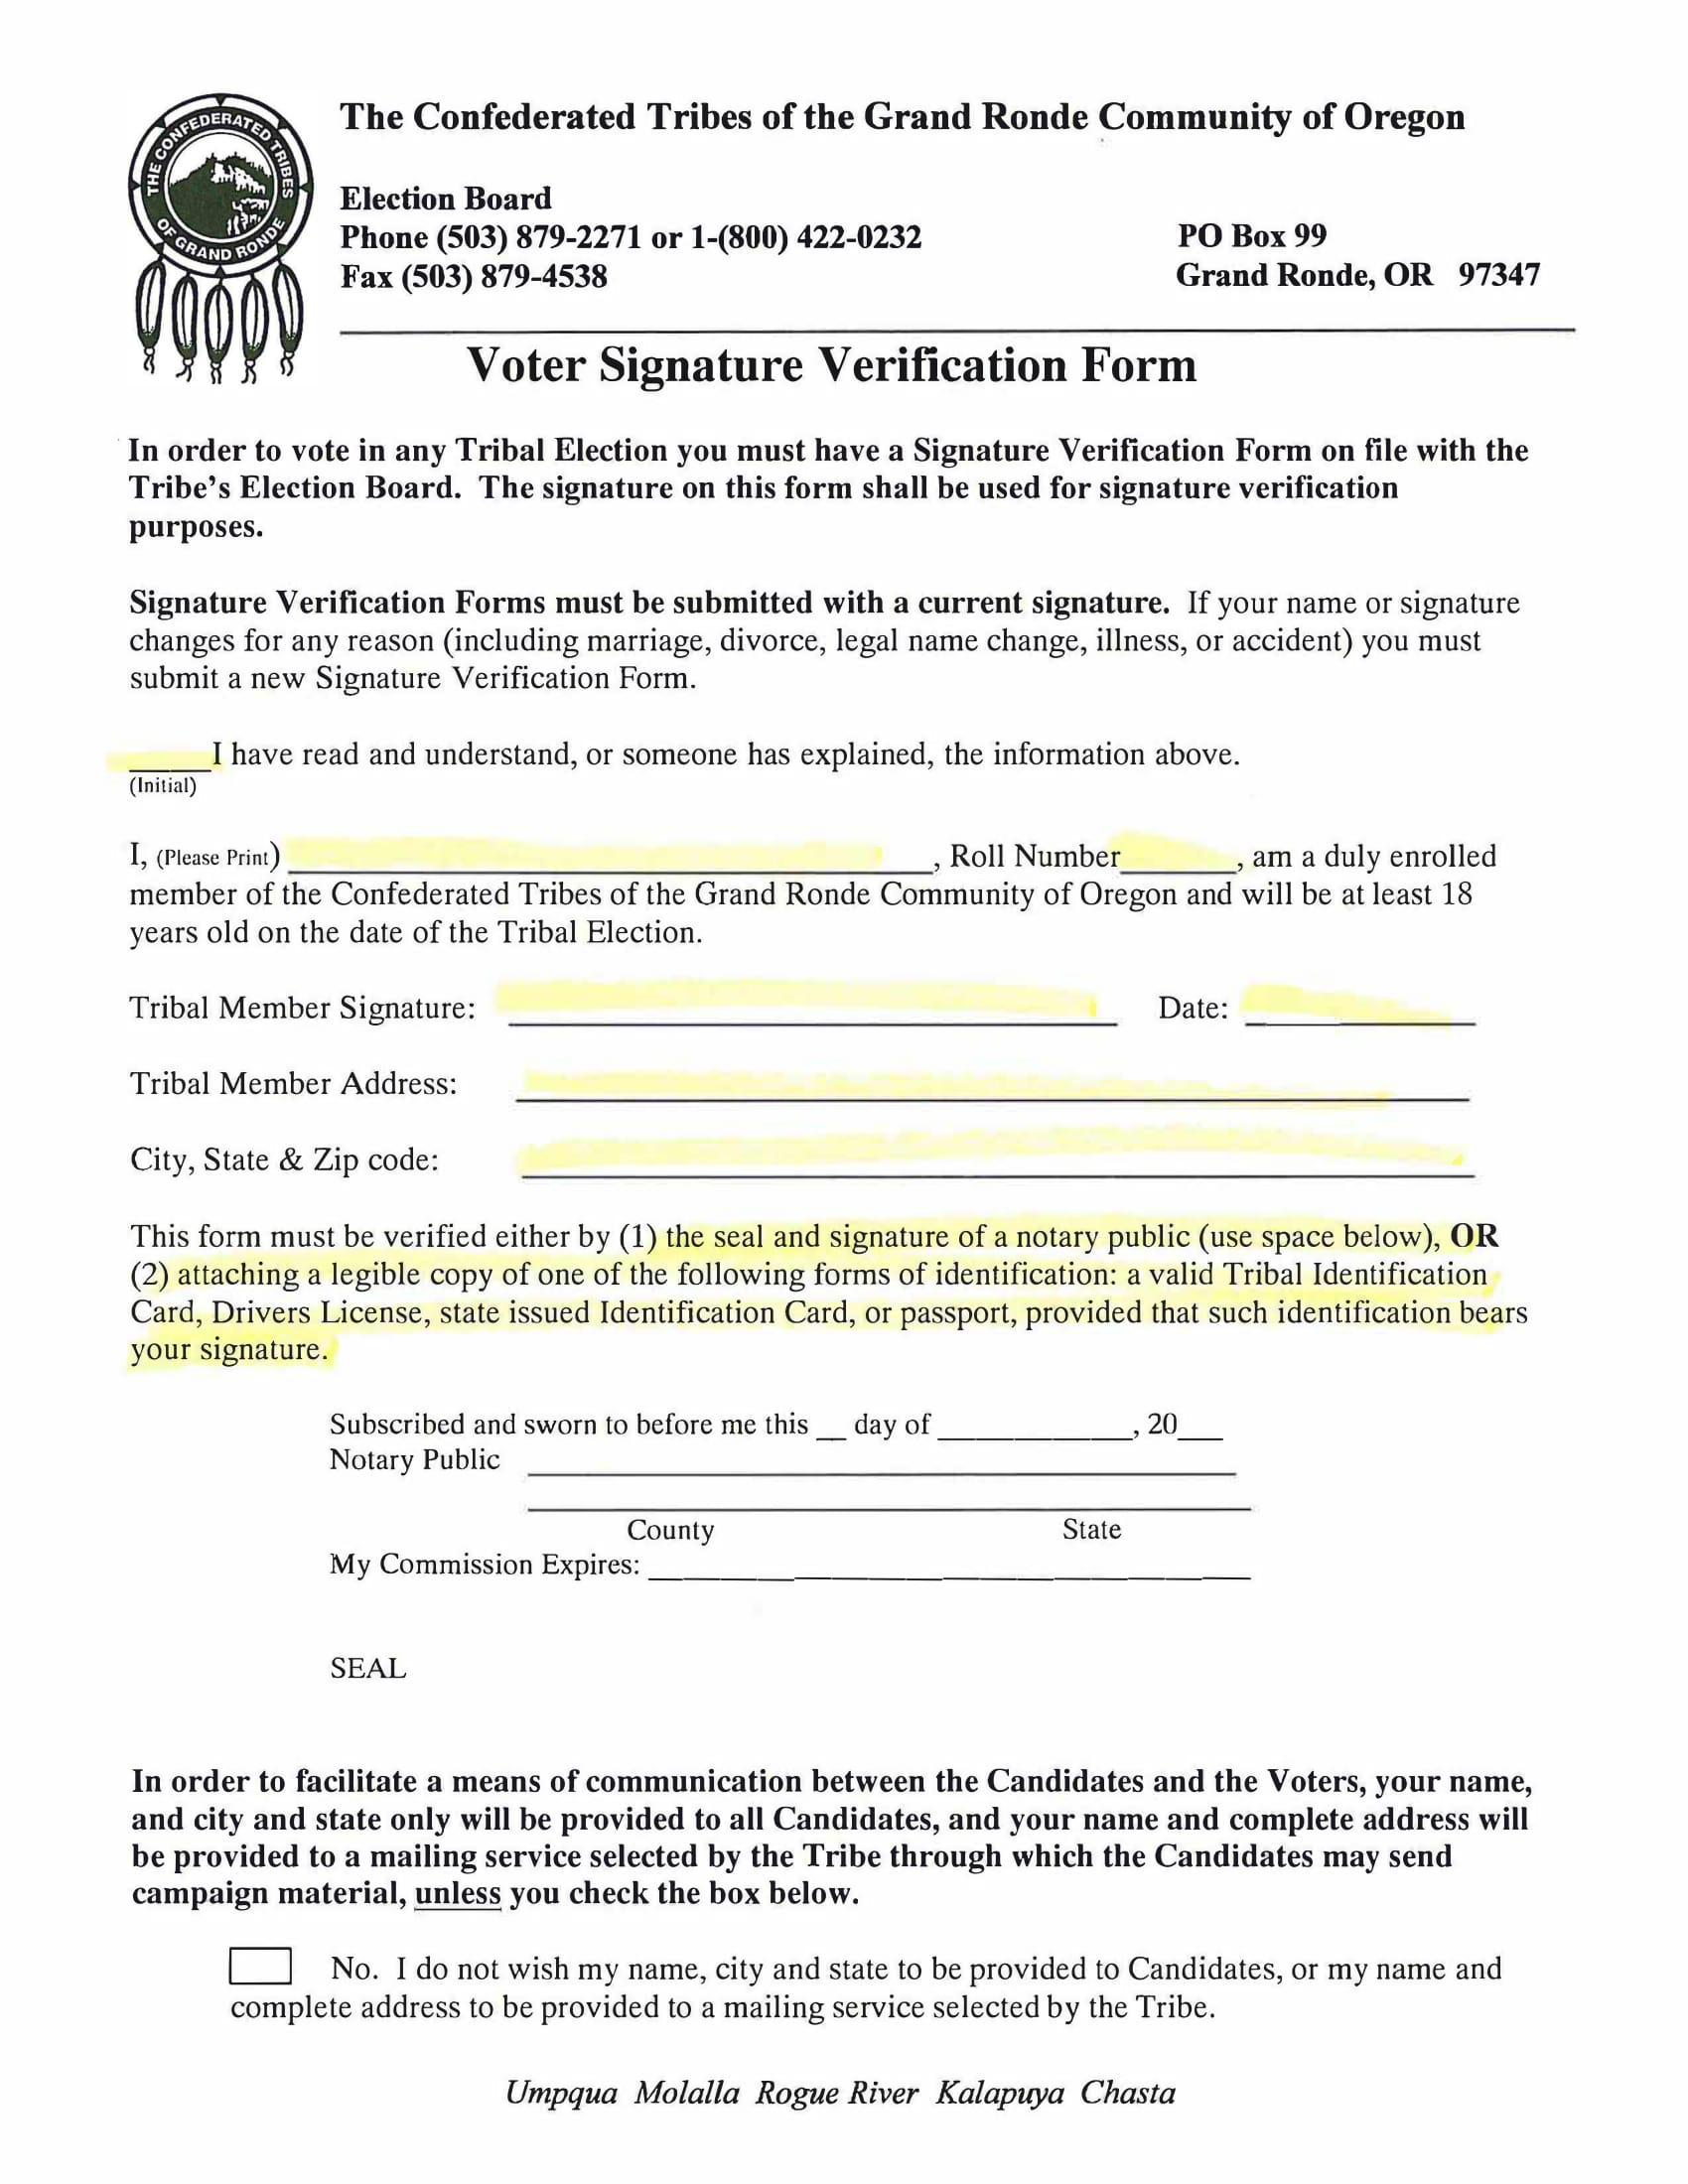 voter signature verification form 1